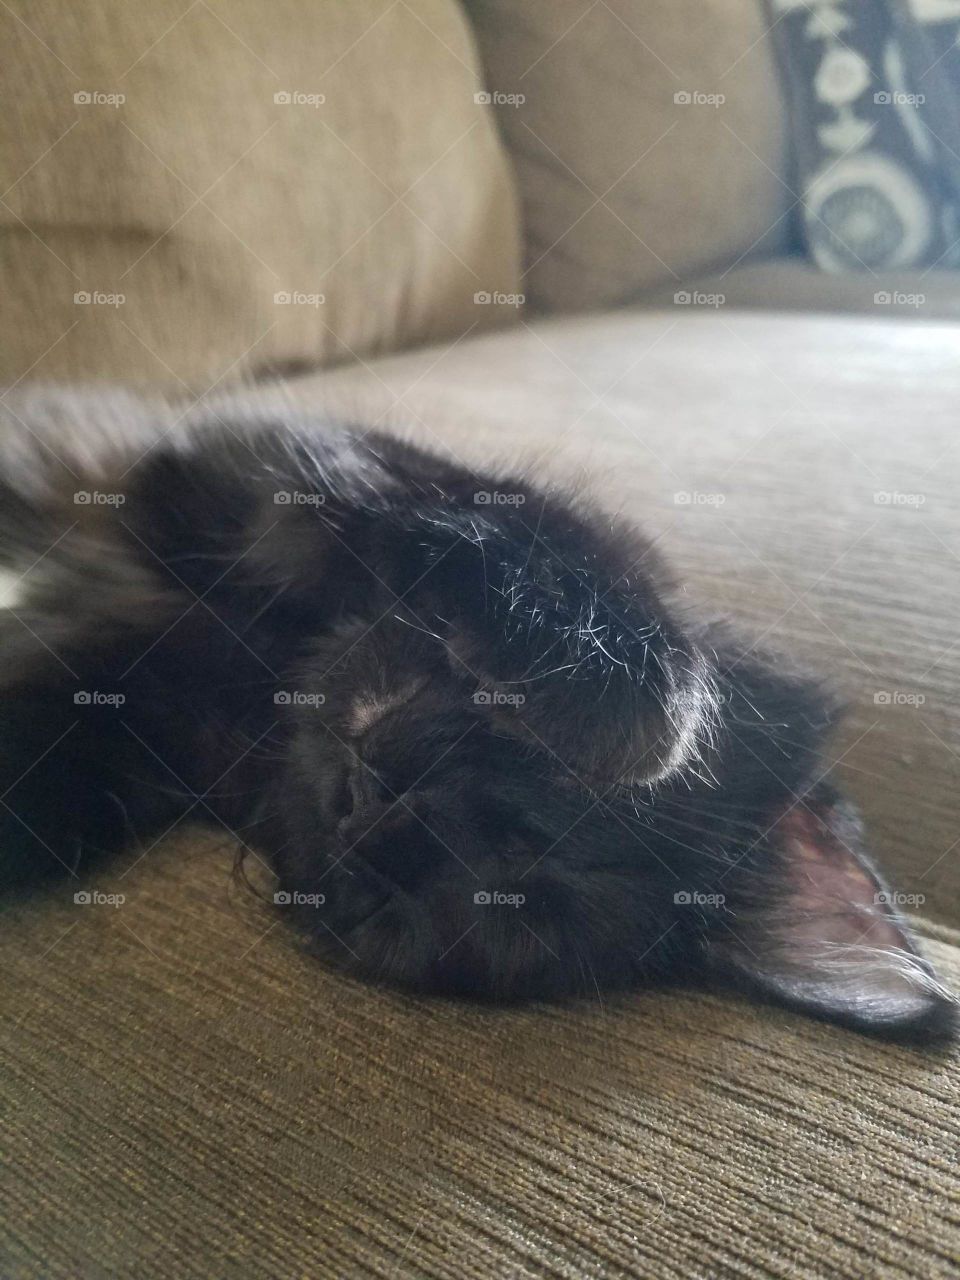 Little cat having sweet dreams.